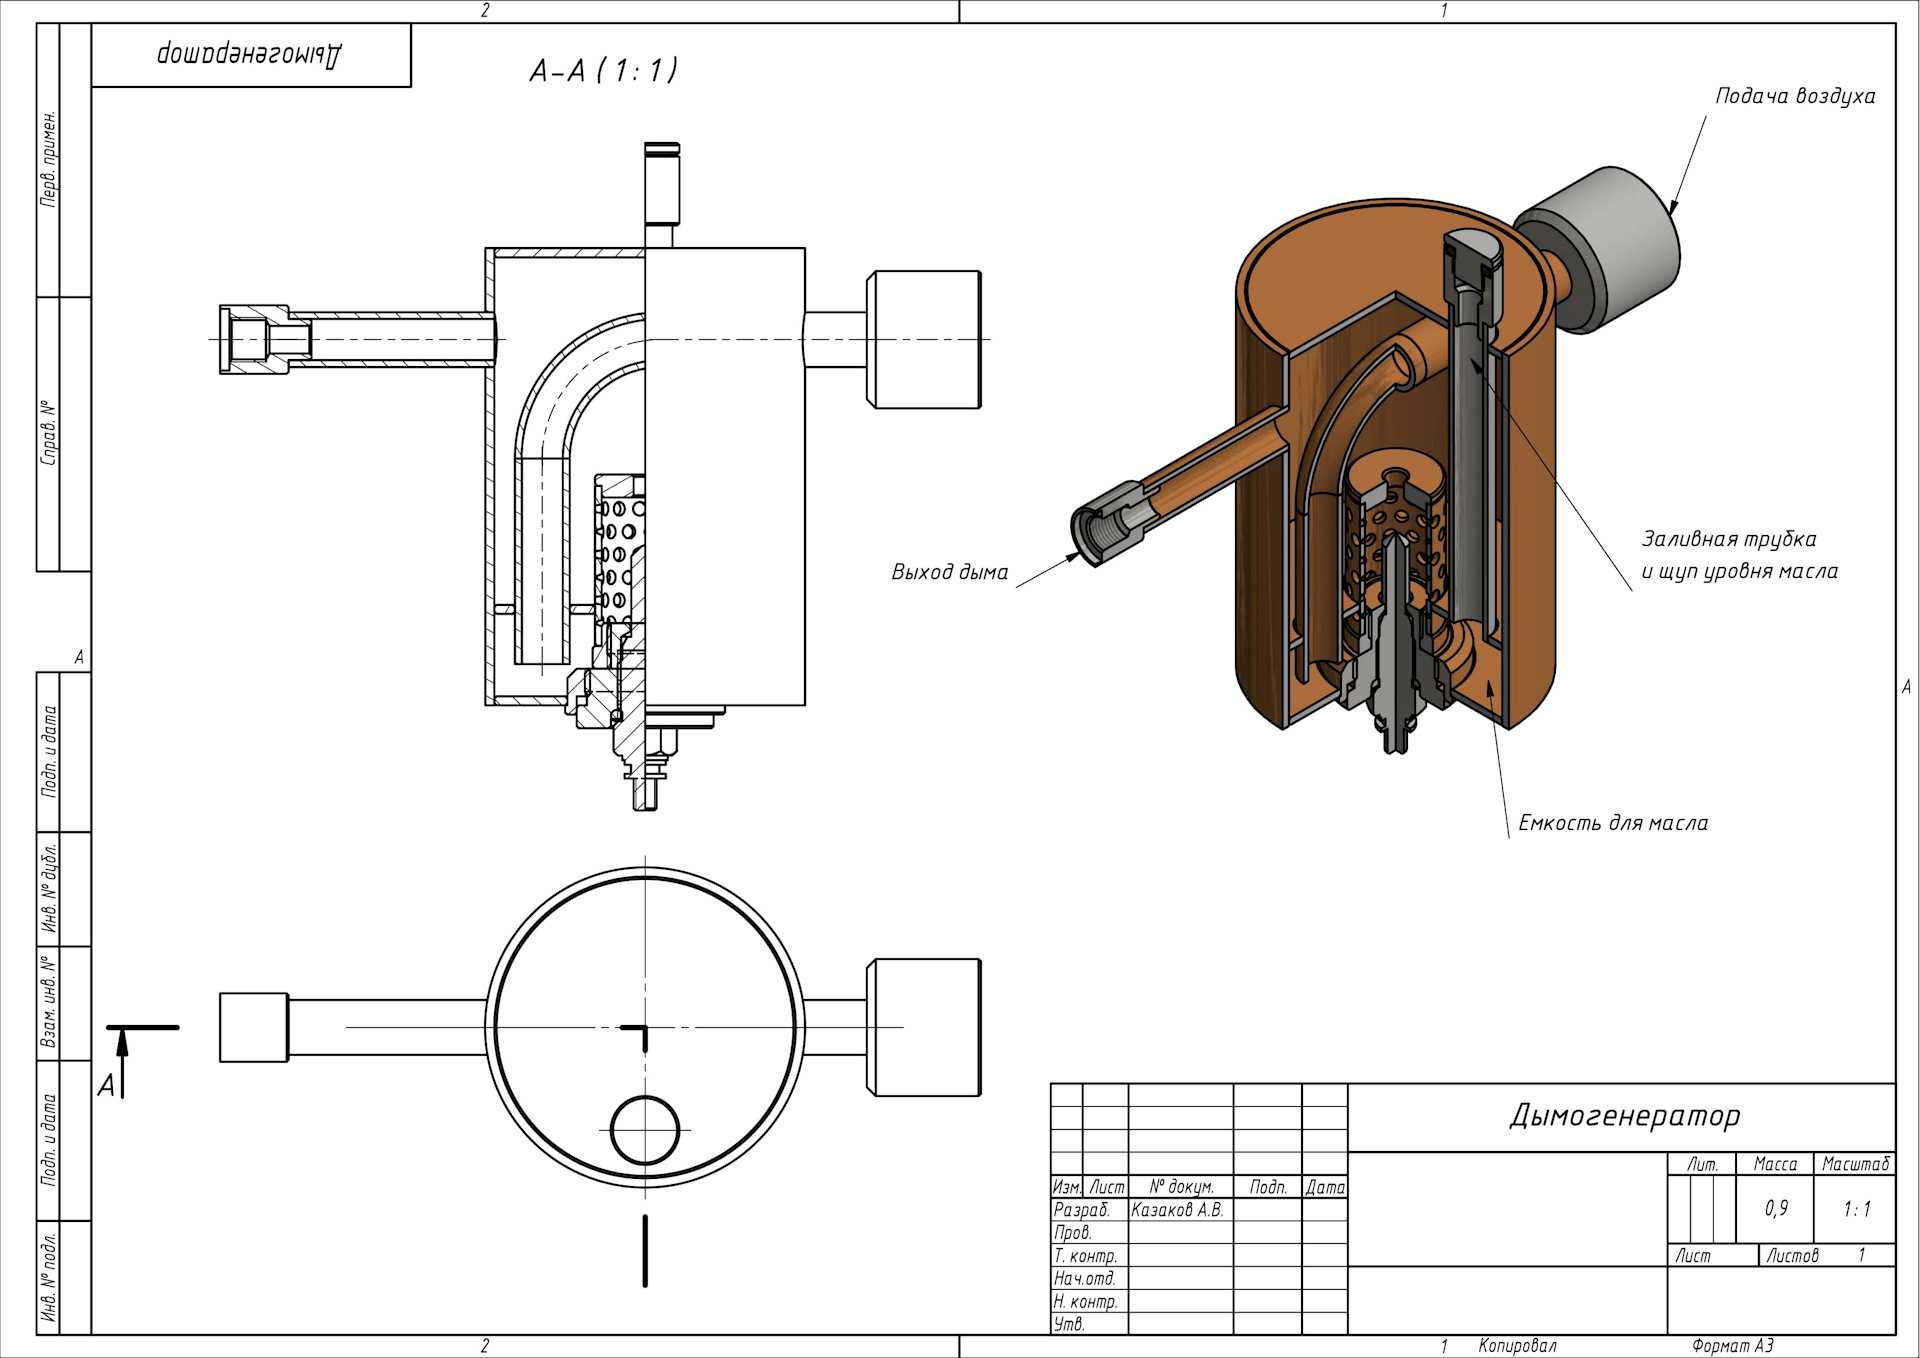 Дымогенератор своими руками (95 фото): пошаговая схема создания прибора